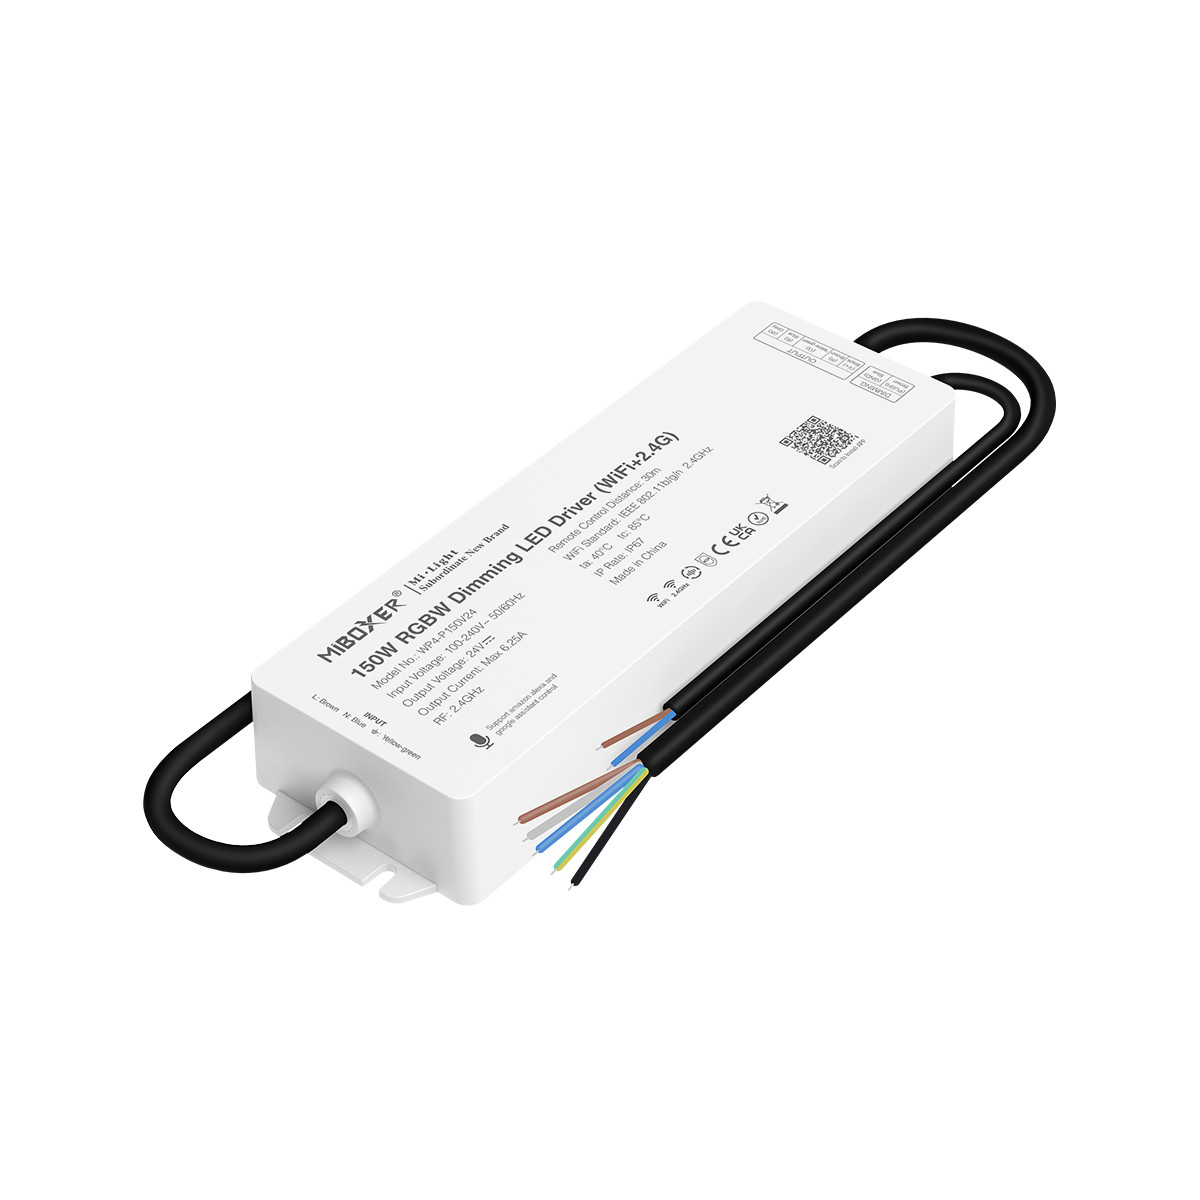 Controller für RGB / RGBW LED Streifen mit 150W Netzteil - 24V DC - WLAN + 2,4G - IP67 - Sprachassistent, Smartphone, Tuya App